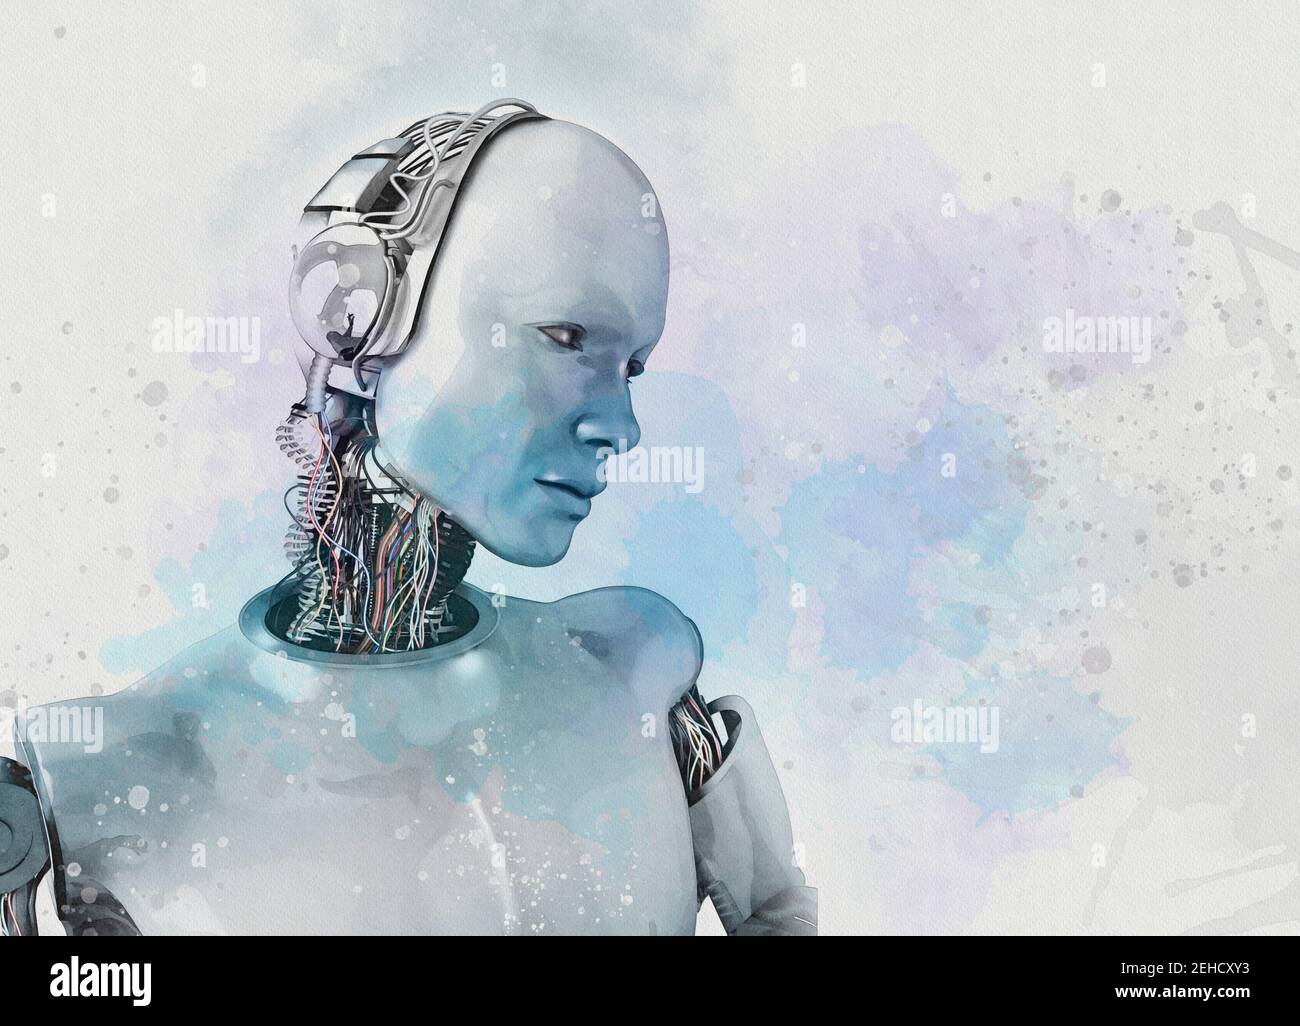 Humanoid robot, illustration Stock Photo